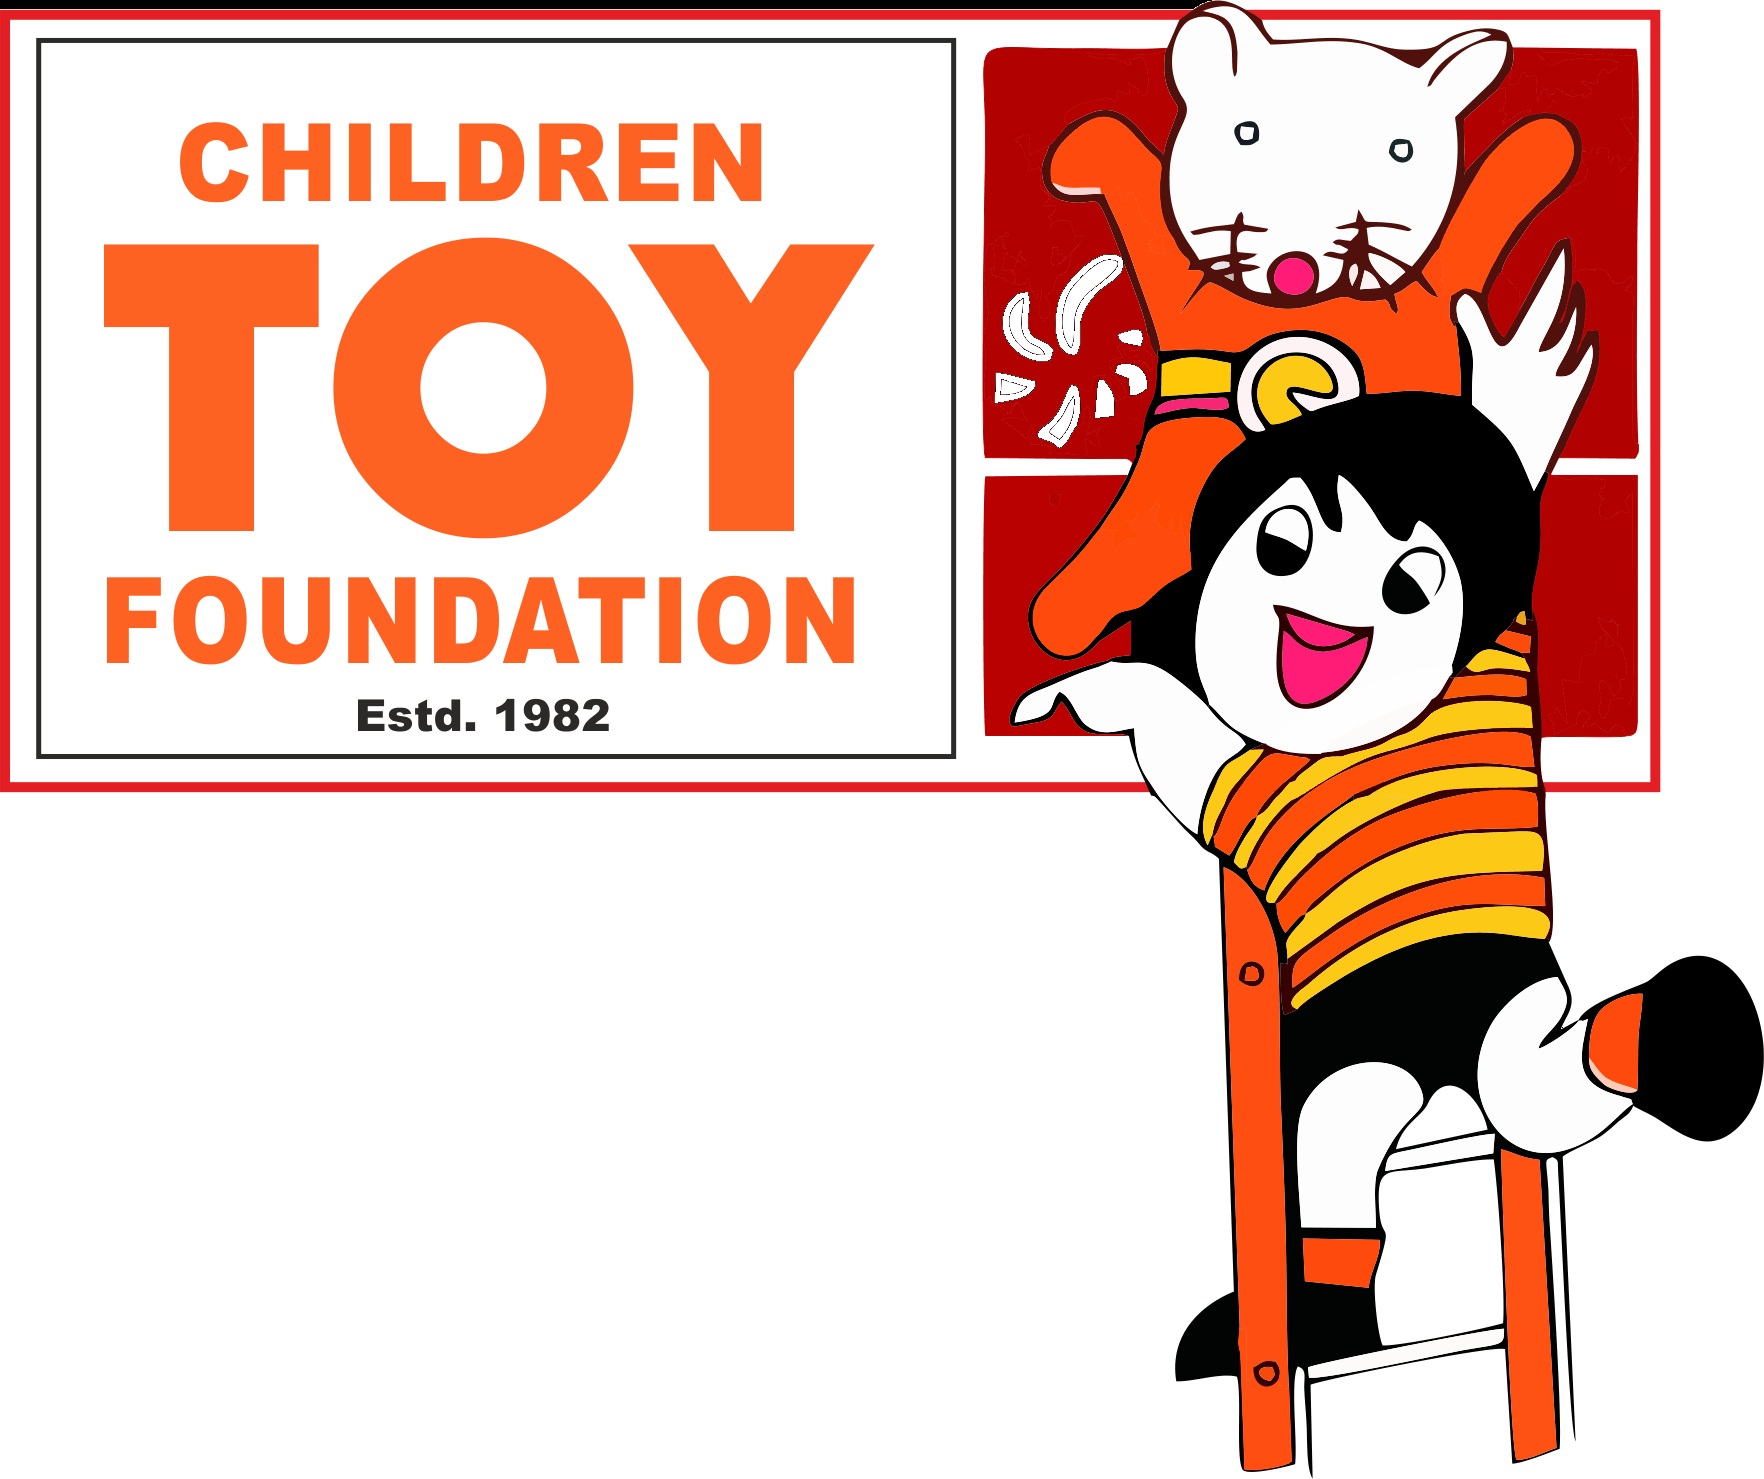 Children Toy Foundation